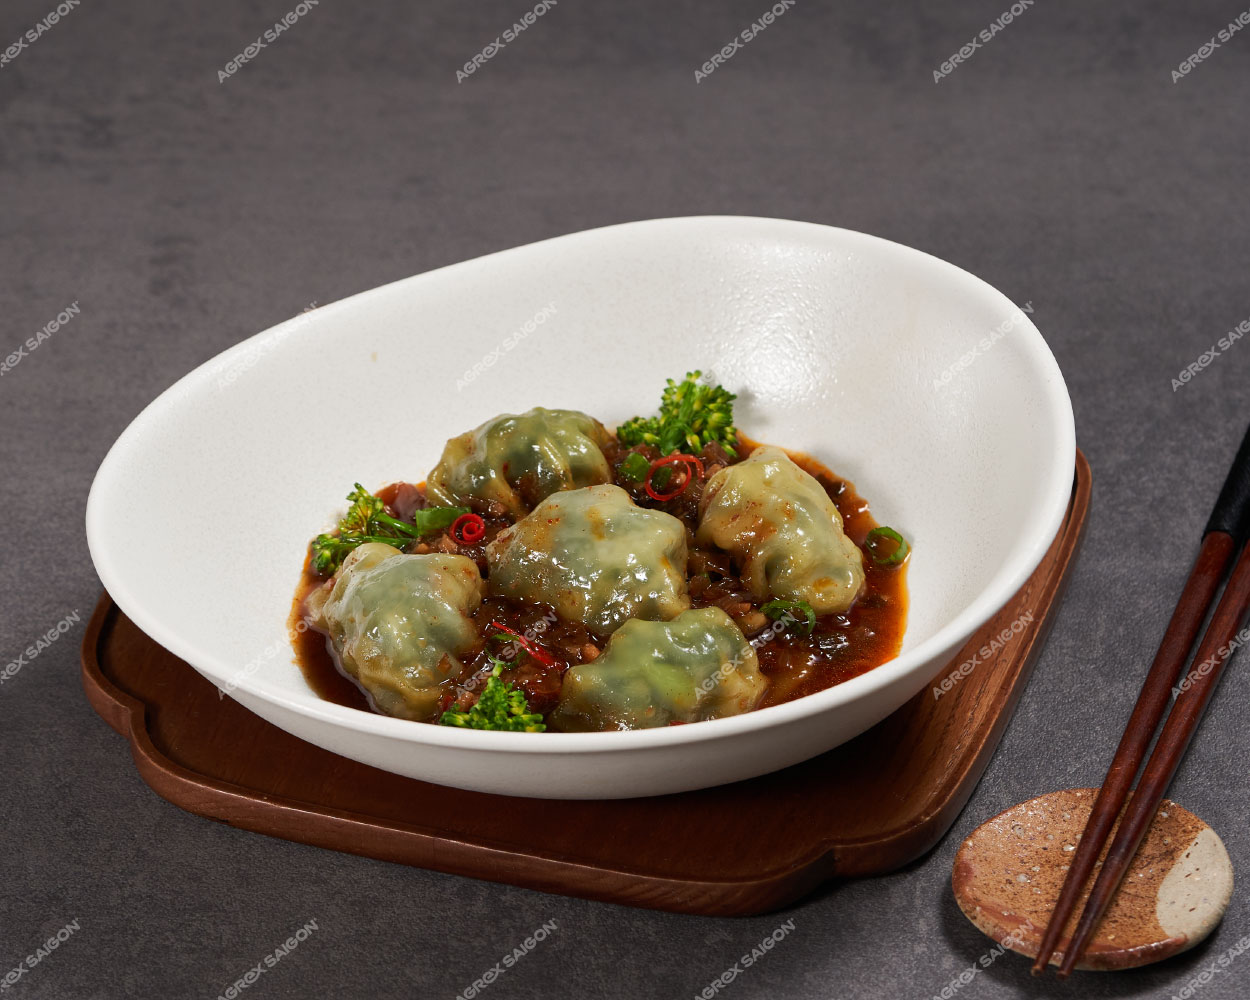 Dumpling with sichuan sauce